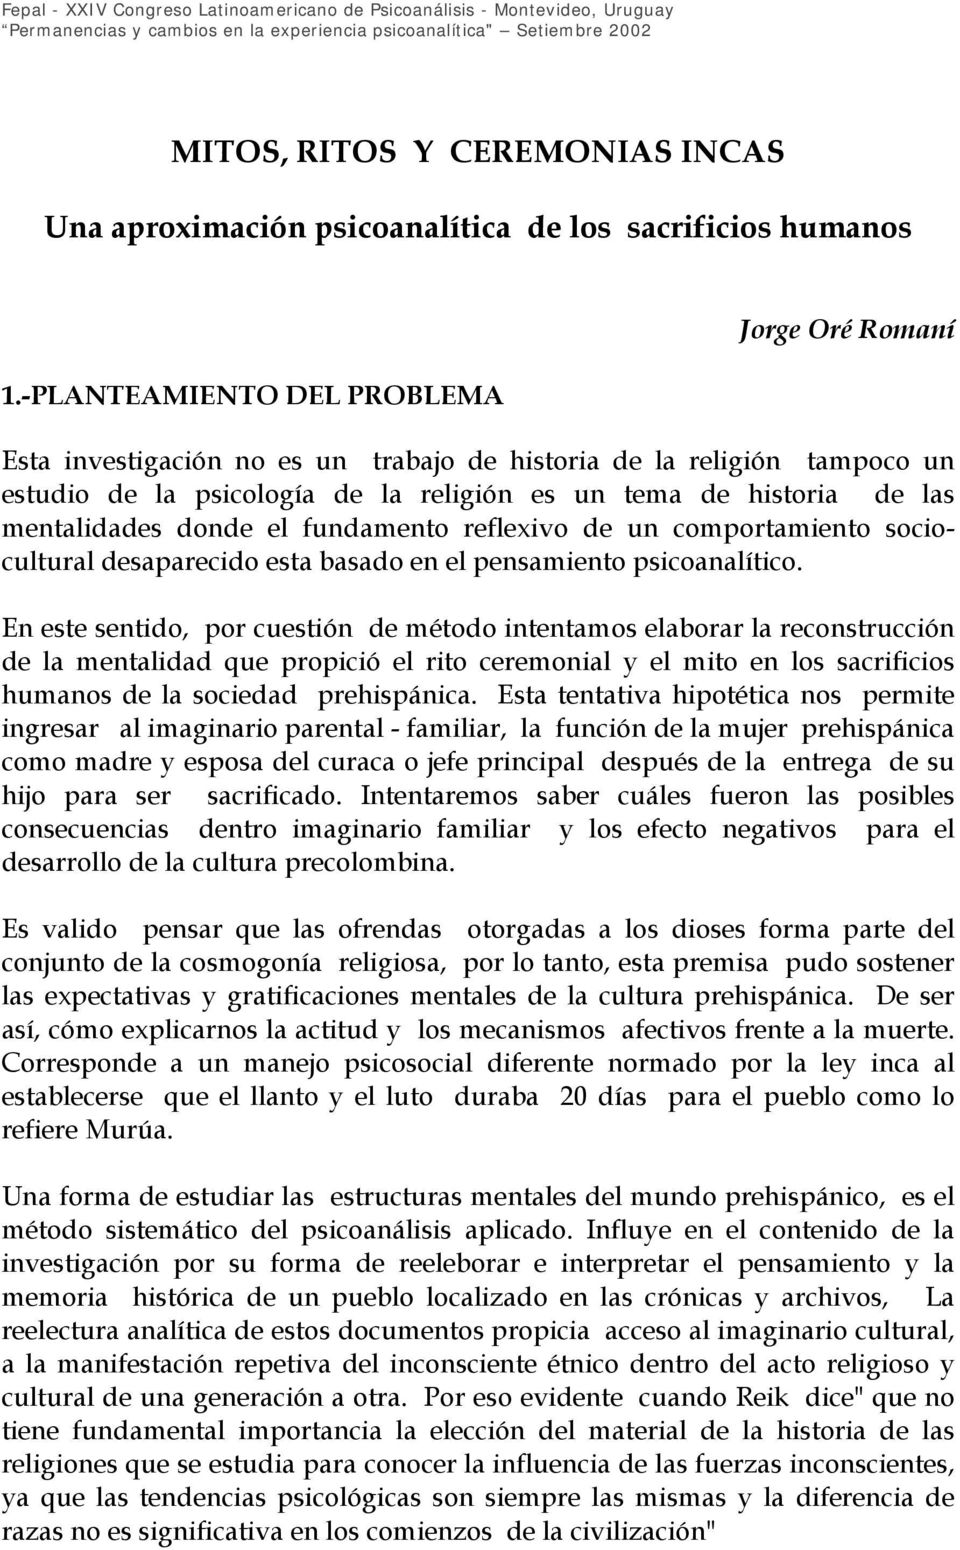 -PLANTEAMIENTO DEL PROBLEMA Jorge Oré Romaní Esta investigación no es un trabajo de historia de la religión tampoco un estudio de la psicología de la religión es un tema de historia de las